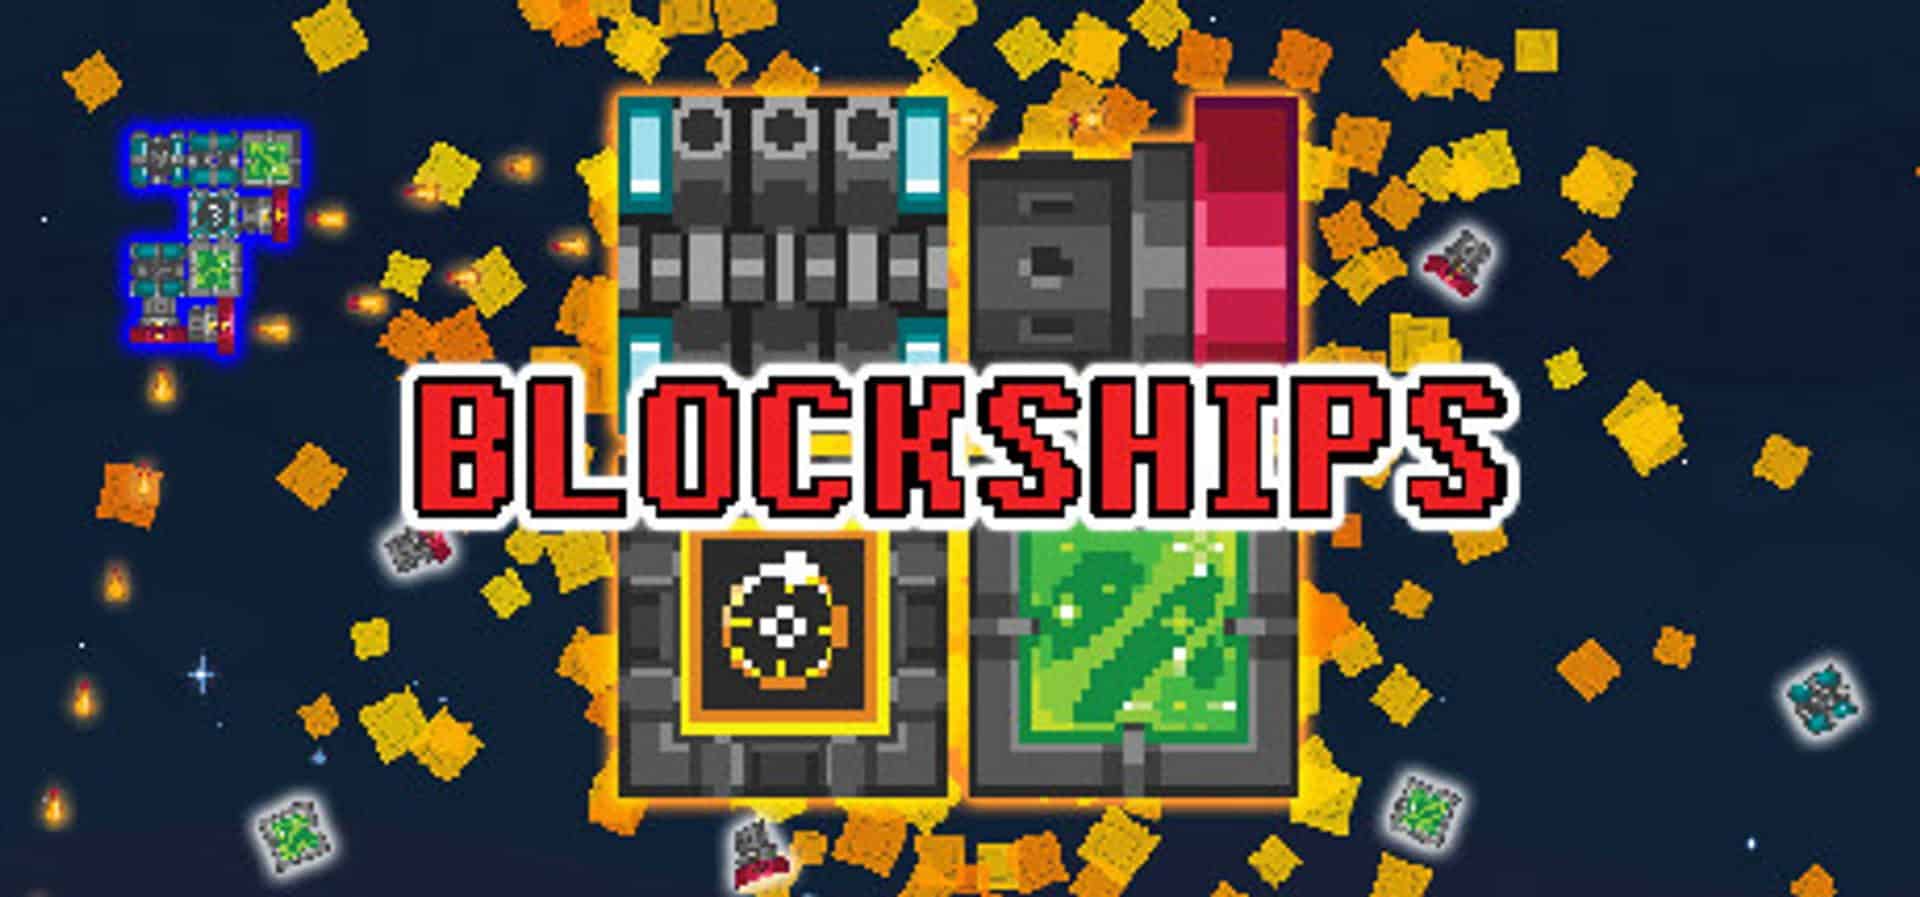 Blockships